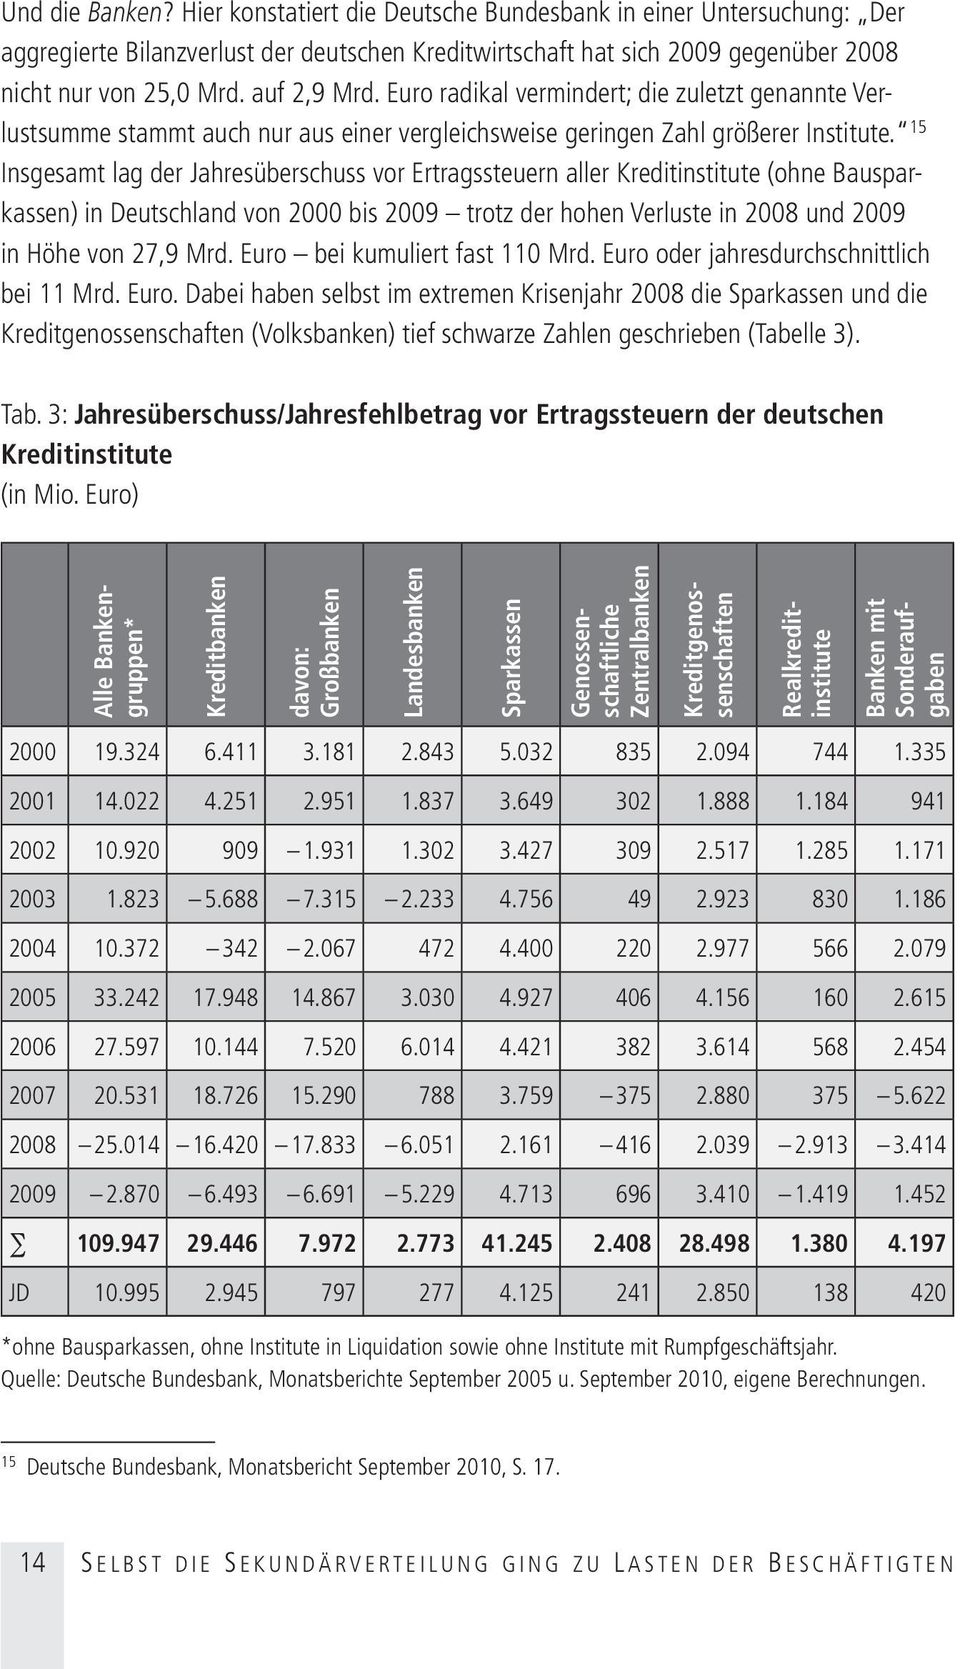 15 Insgesamt lag der Jahresüberschuss vor Ertragssteuern aller Kreditinstitute (ohne Bausparkassen) in Deutschland von 2000 bis 2009 trotz der hohen Verluste in 2008 und 2009 in Höhe von 27,9 Mrd.